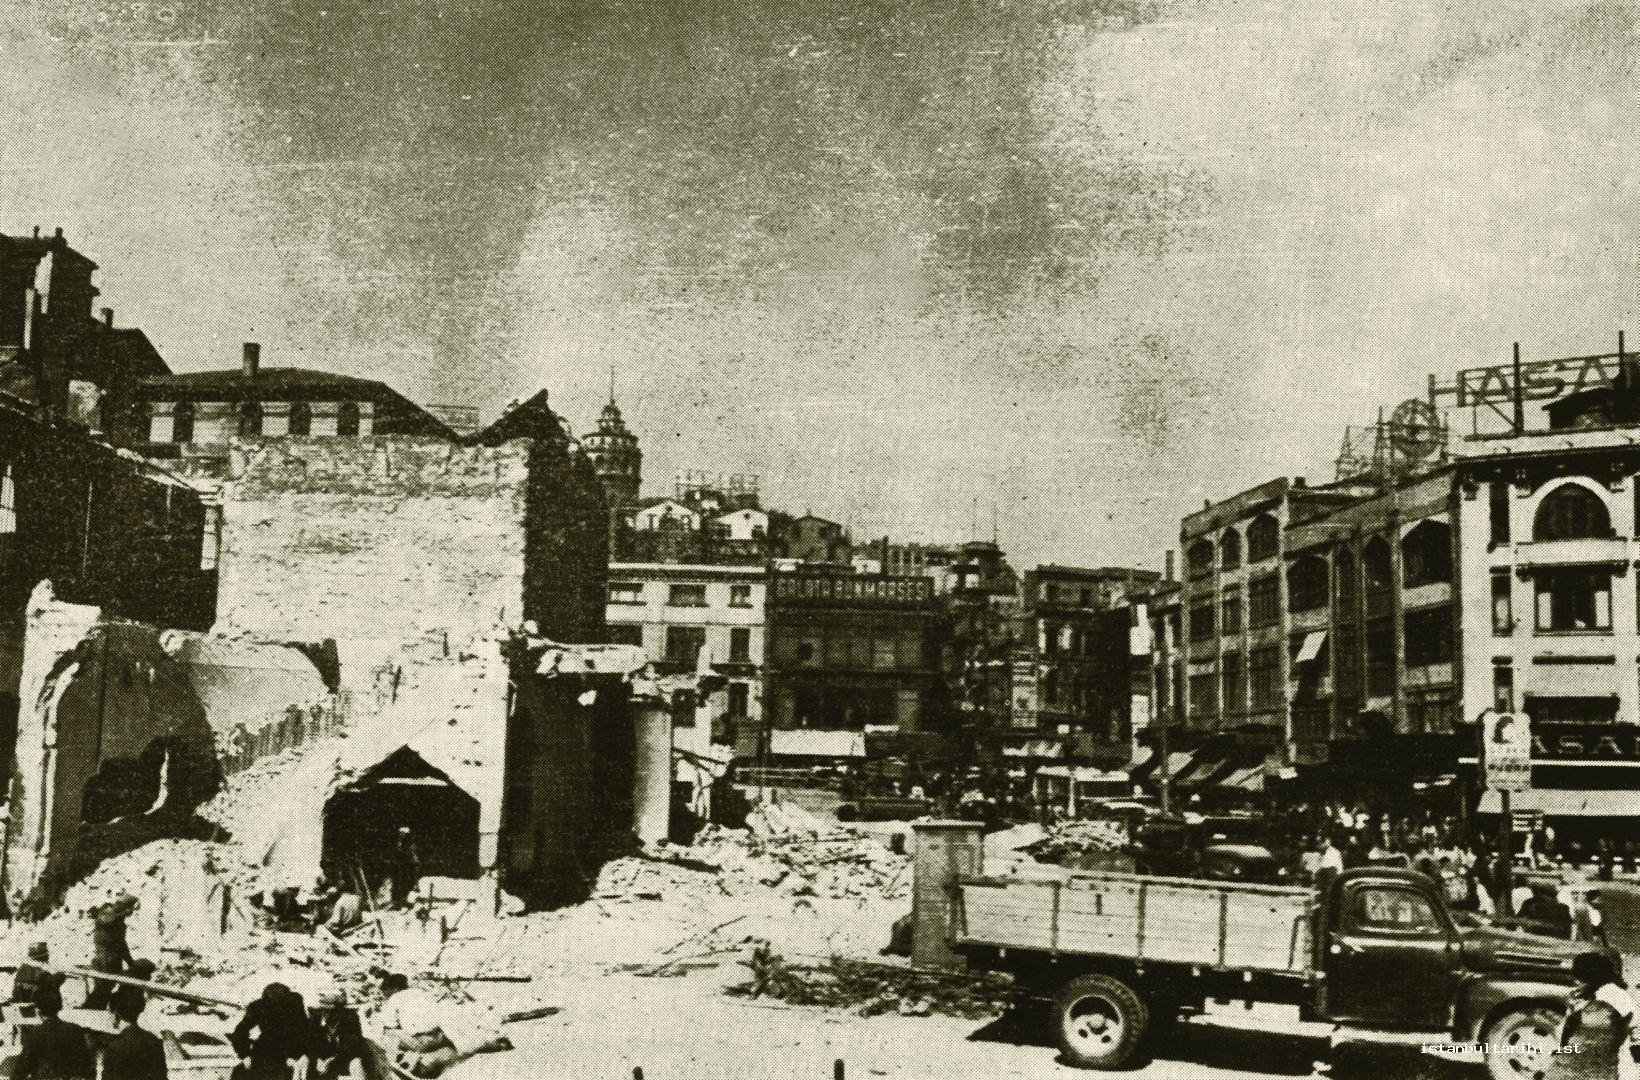 16- “Karaköy’ü son derece lüzumu olduğu halde yıllarca mevcut olmamış olan
        meydan, Karaköy’e kapayan tek katlı, harap ve pis manzaralı dükkanların kaldırılarak
        sahanın açılıp ferahlatılmasıyla imkan dahiline girmiştir. Resmimiz köprünün
        köşesinde ve başında eski Şehir Hatları işletmesi binasının kaldırılışını tespit ediyor”